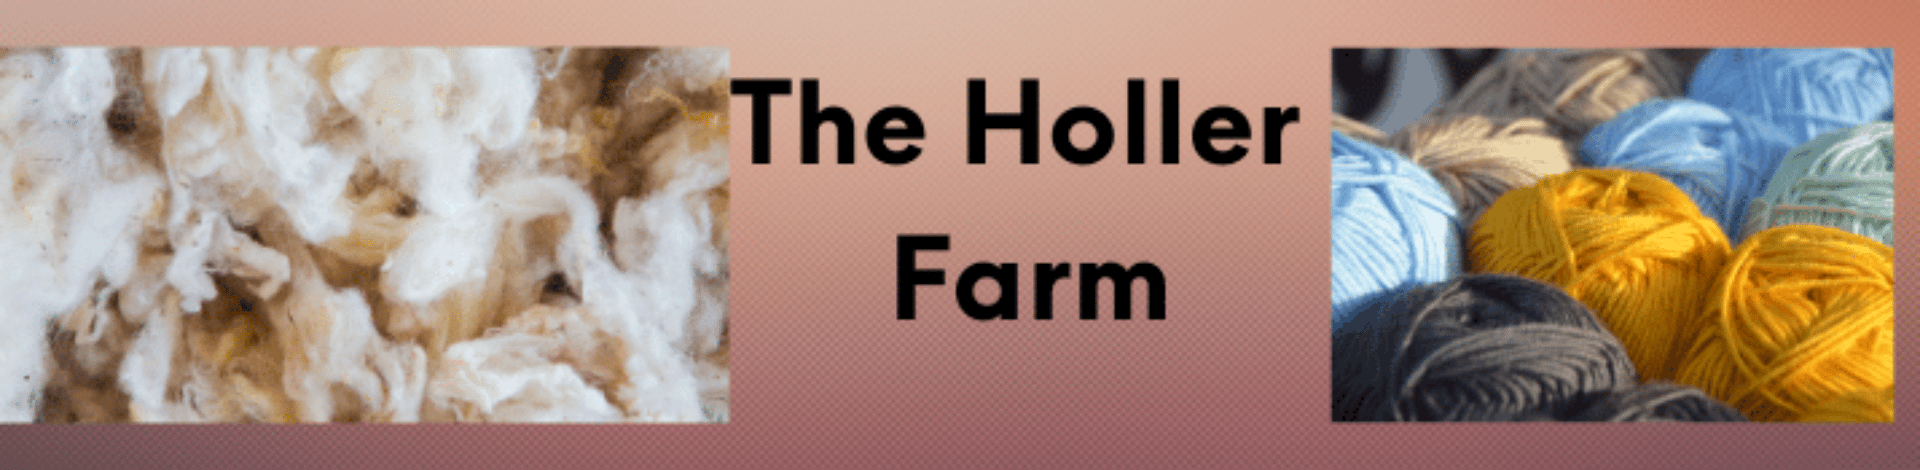 The Holler Farm